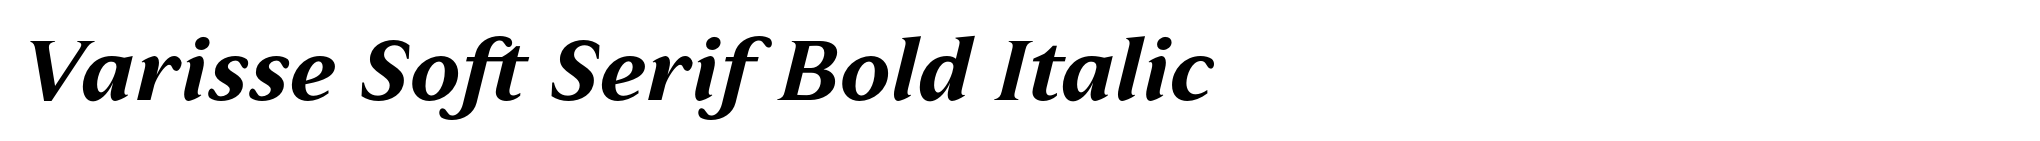 Varisse Soft Serif Bold Italic image